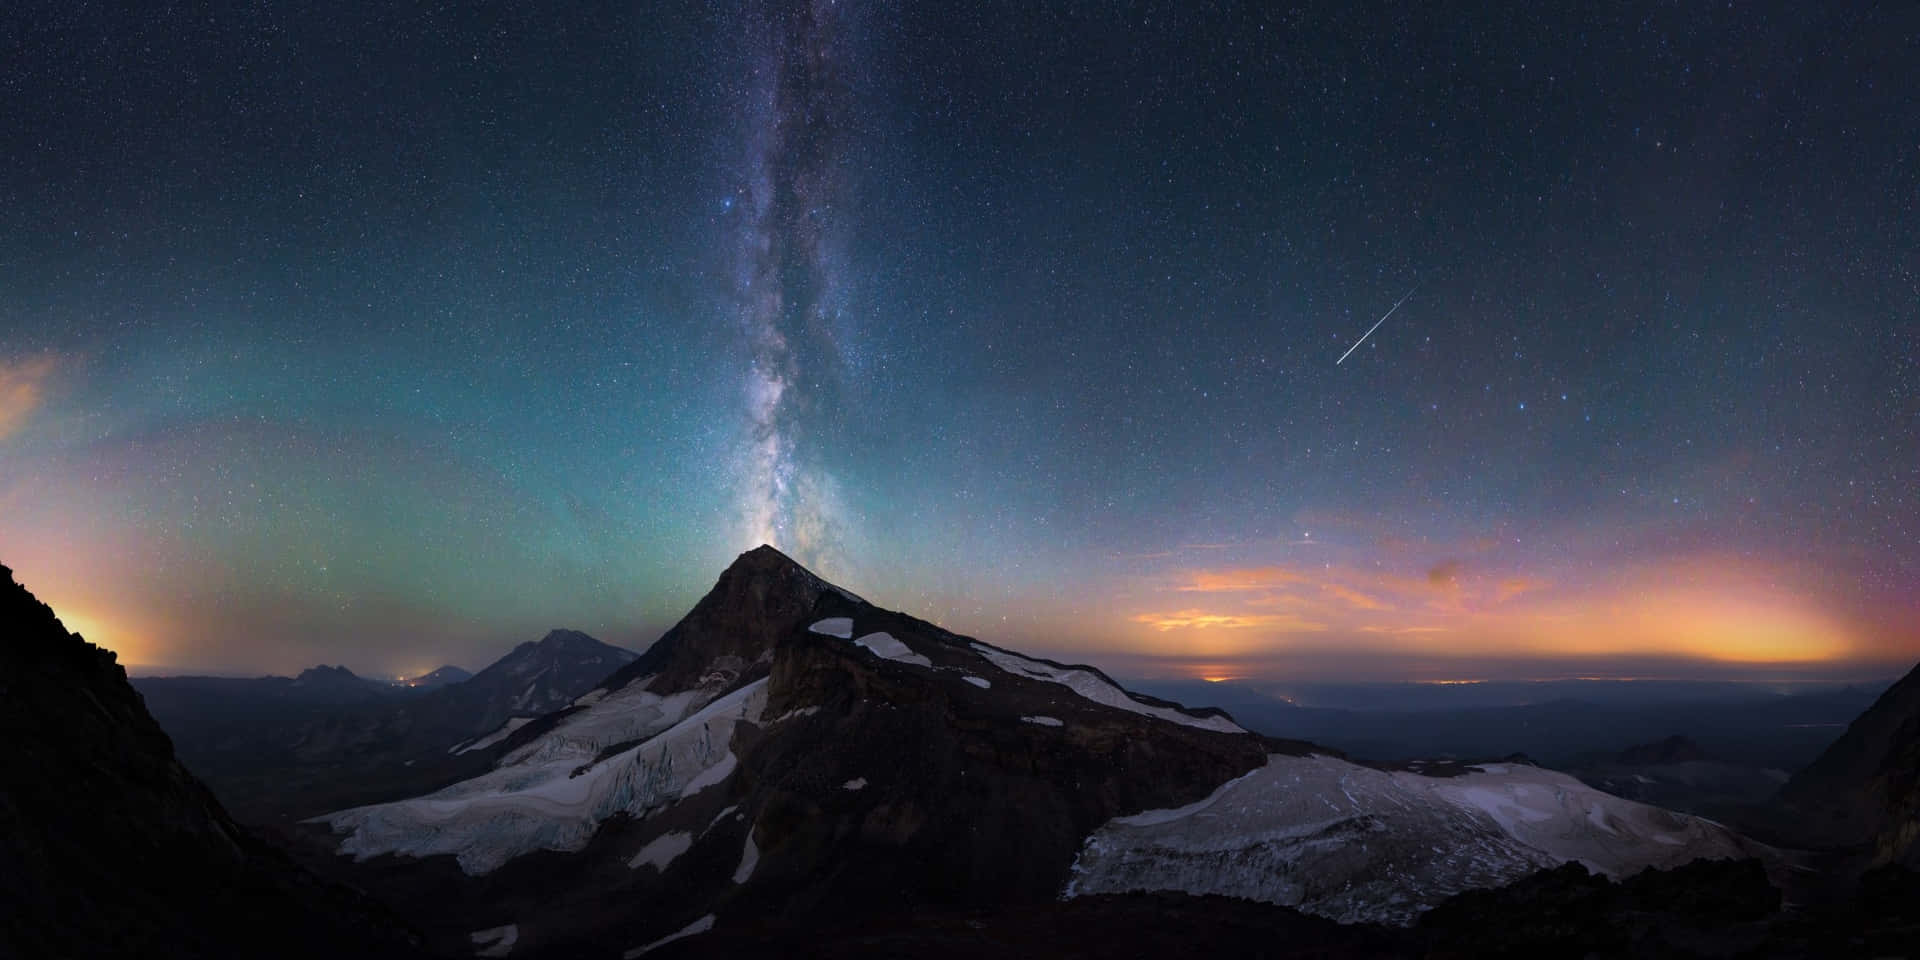 Impresionantelluvia De Meteoros En El Cielo Nocturno Fondo de pantalla